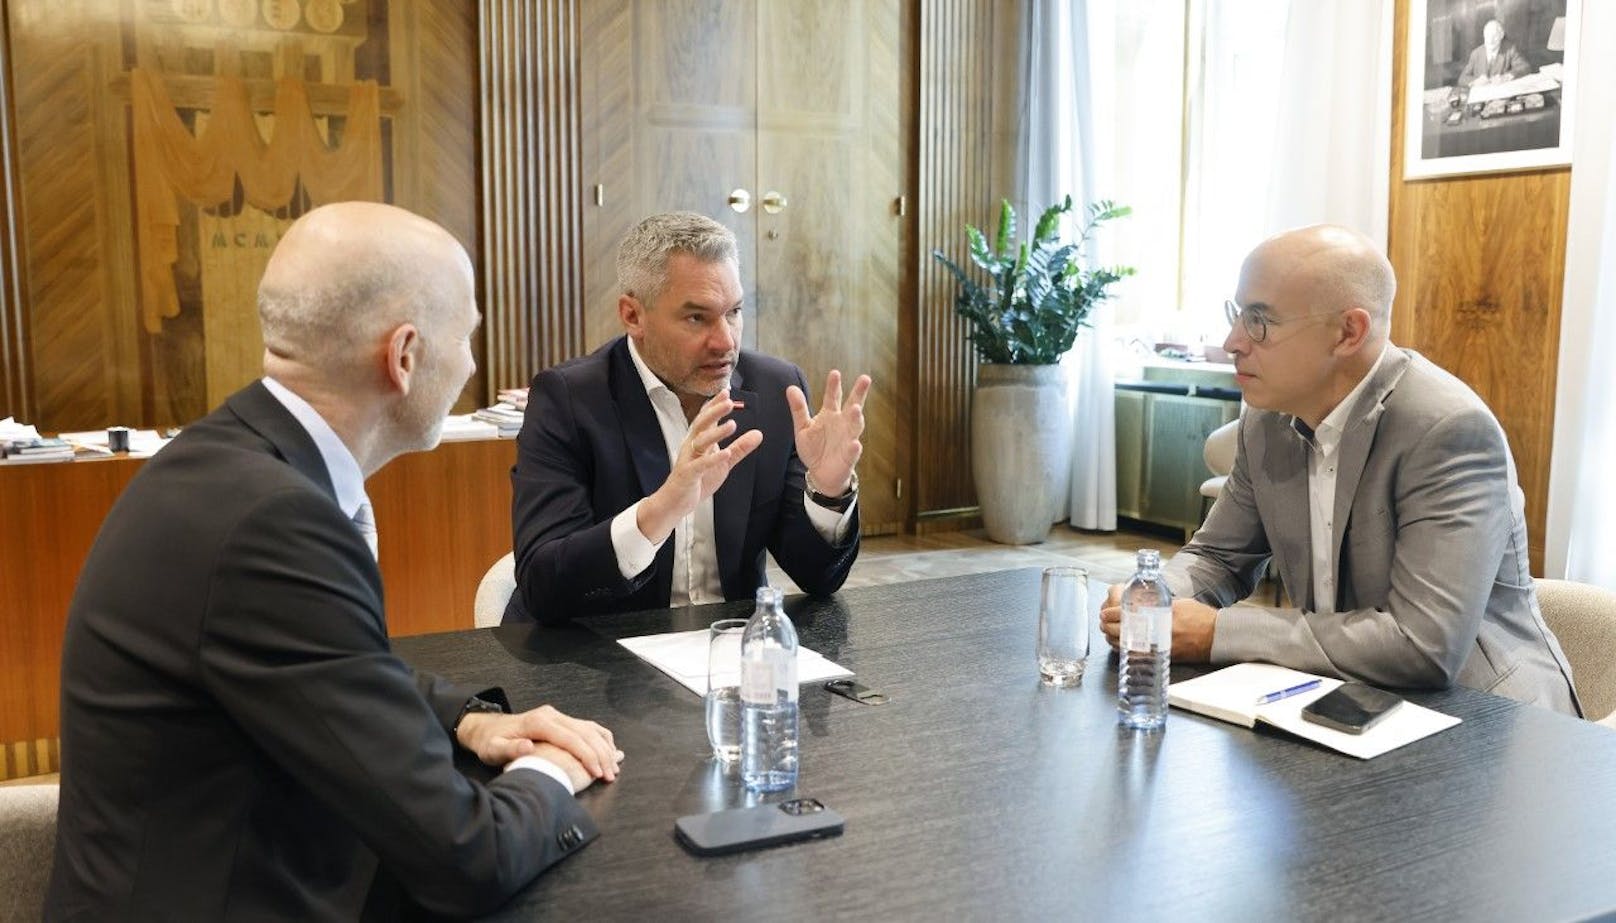 Am Montag begrüßte Bundeskanzler Karl Nehammer Wirtschaftsminister Martin Kocher (beide ÖVP) sowie den Chef des Wirtschaftsforschungsinstituts, Gabriel Felbermayr im Bundeskanzleramt.